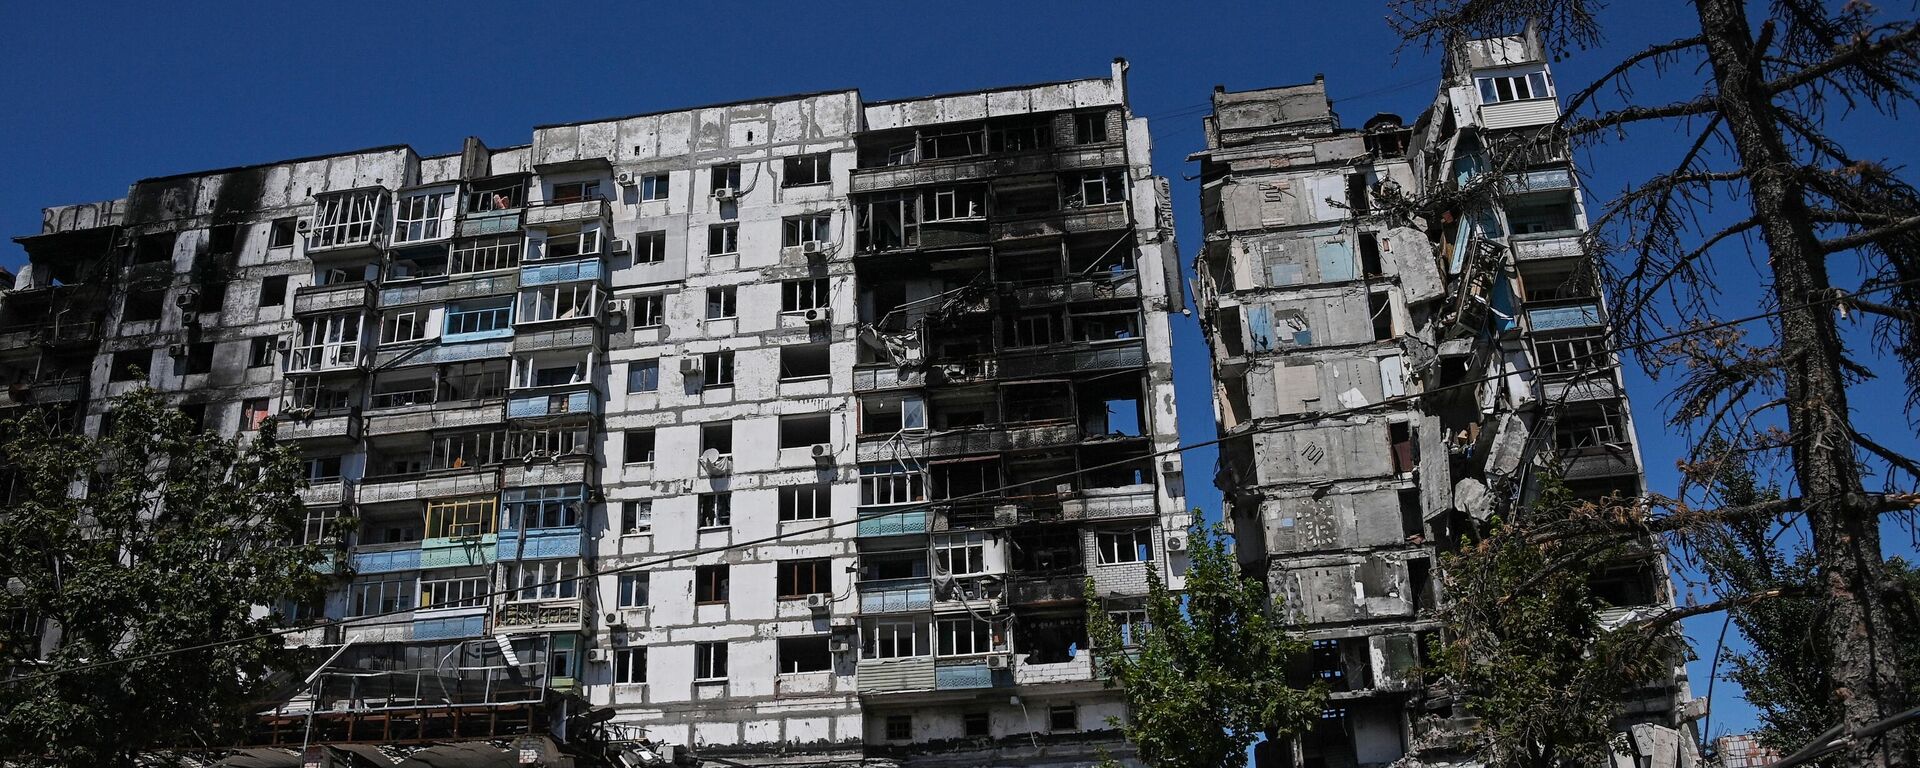 A destroyed residential building in Mariupol, DPR. - Sputnik International, 1920, 04.08.2022